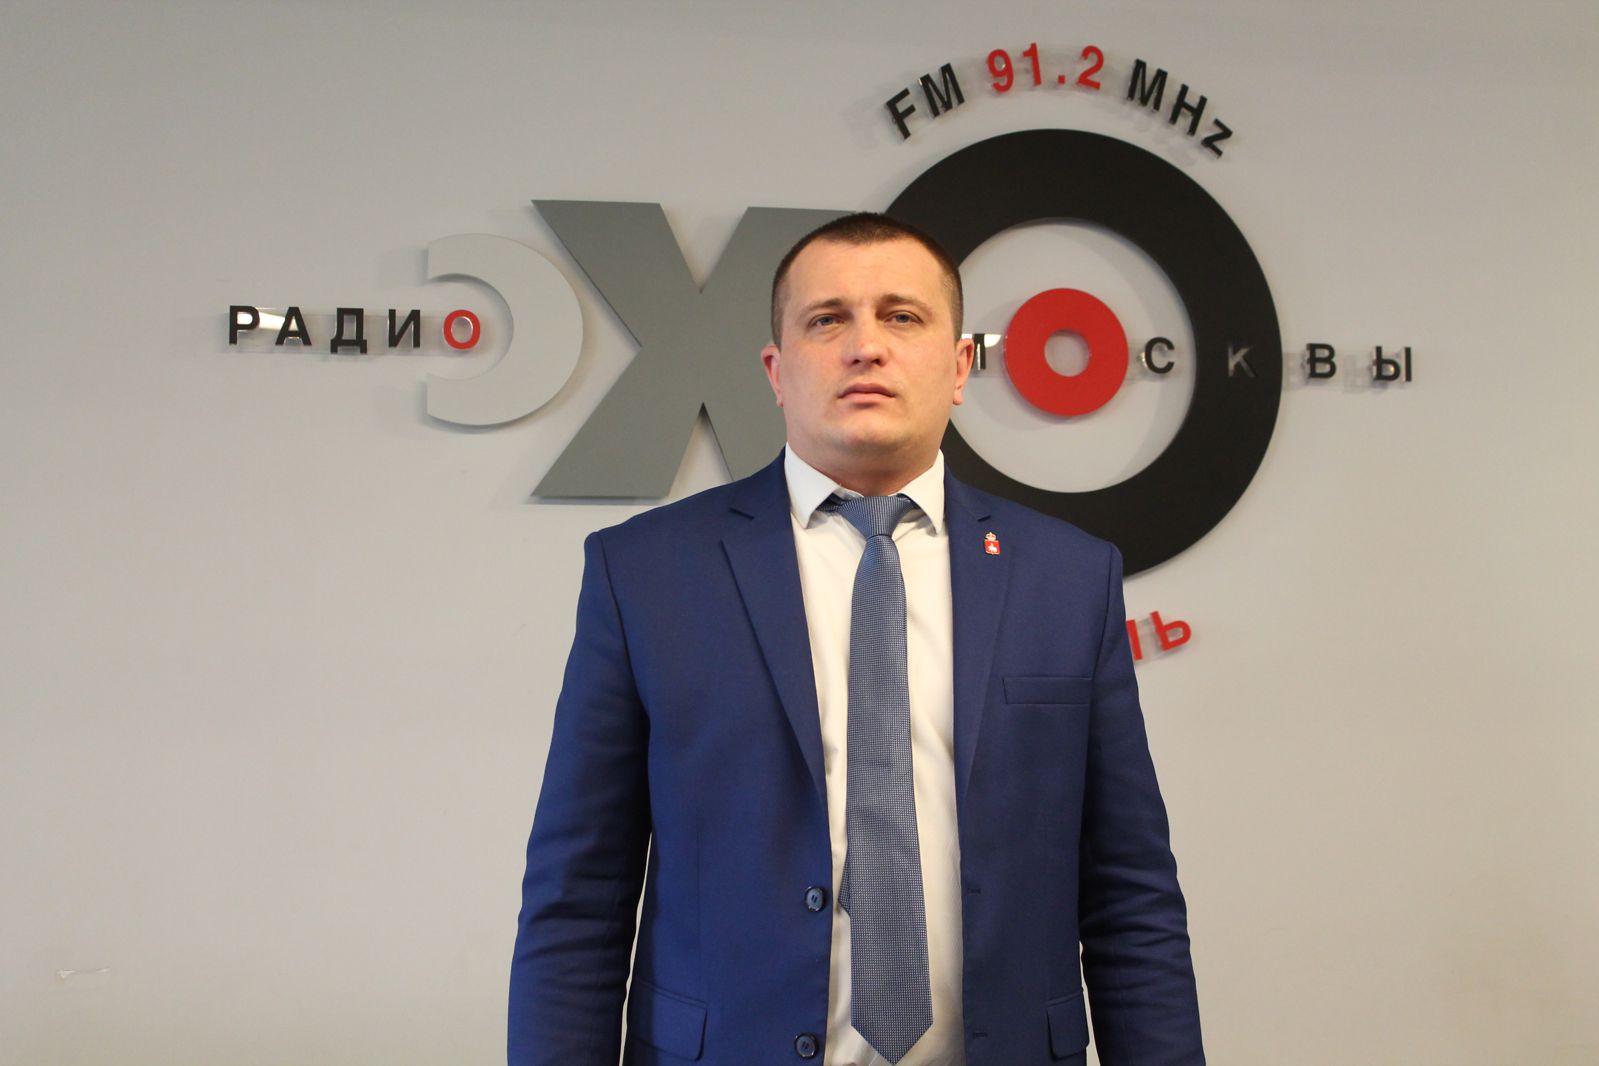 Как бороться с незаконными действиям в сфере управления многоквартирными домами рассказал руководитель ИГЖН Александр Евсюков